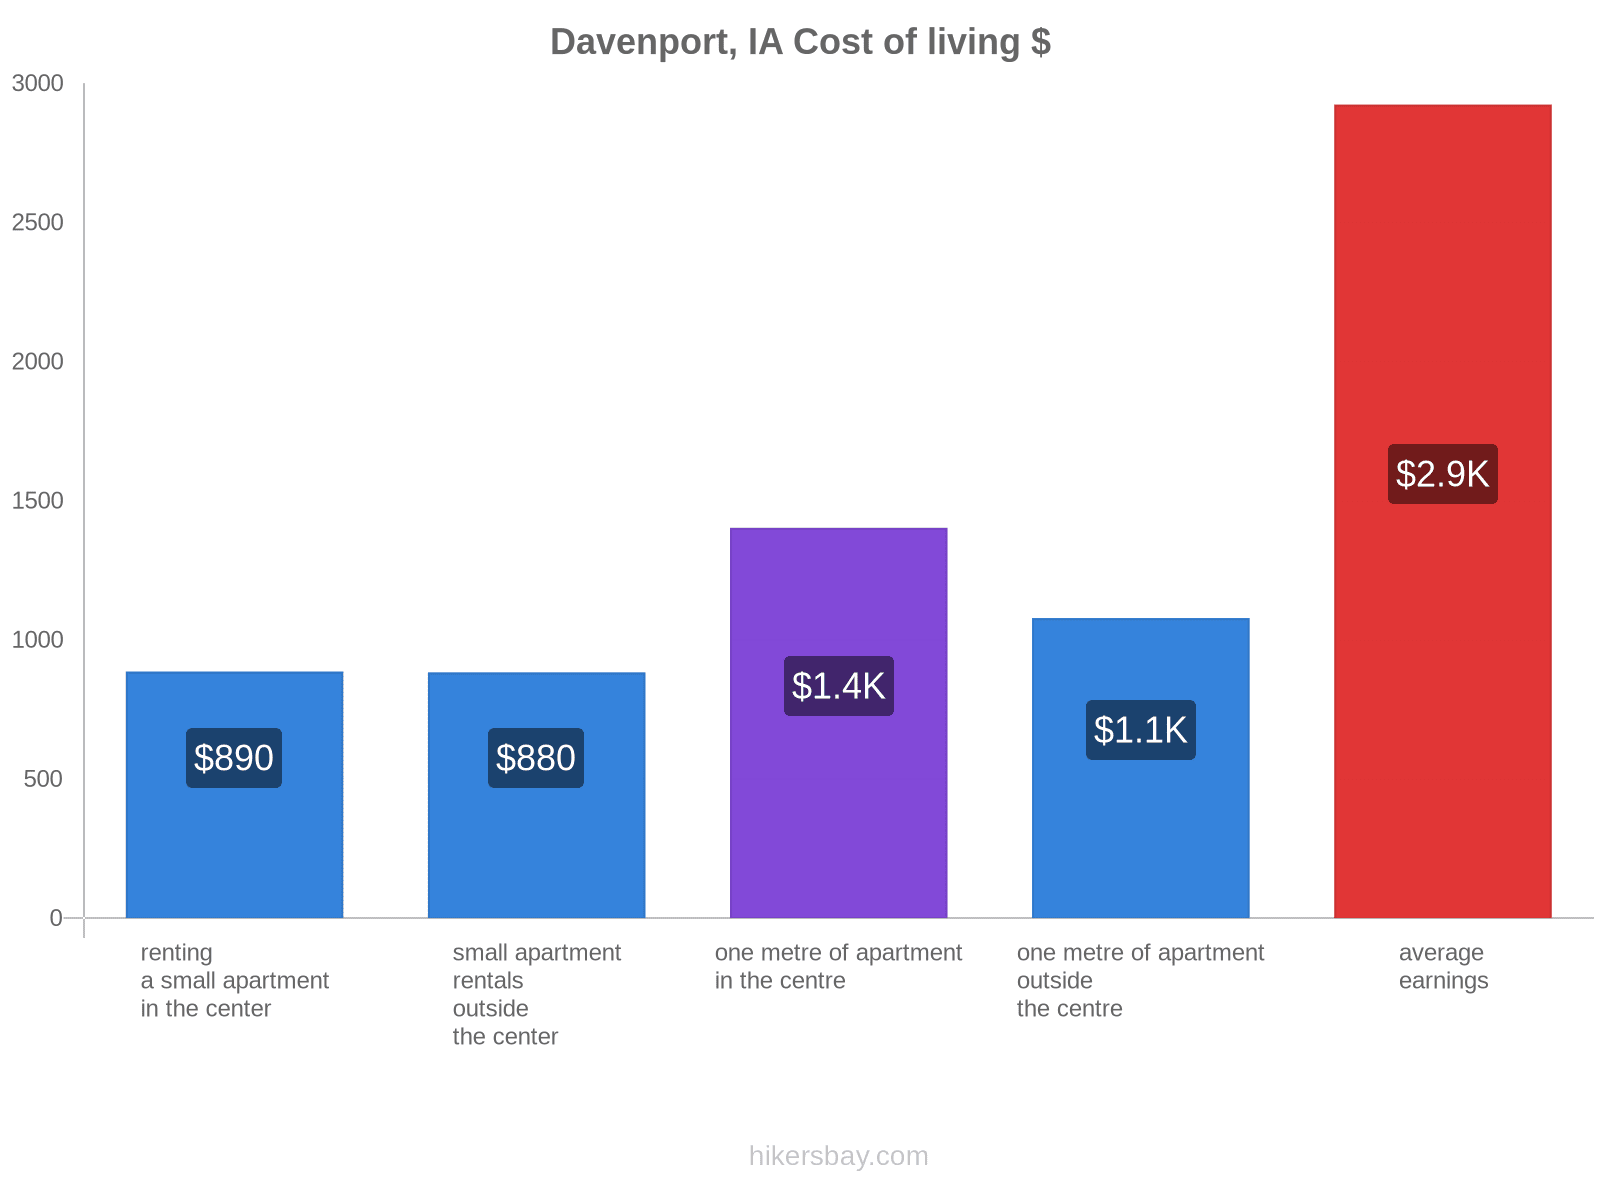 Davenport, IA cost of living hikersbay.com